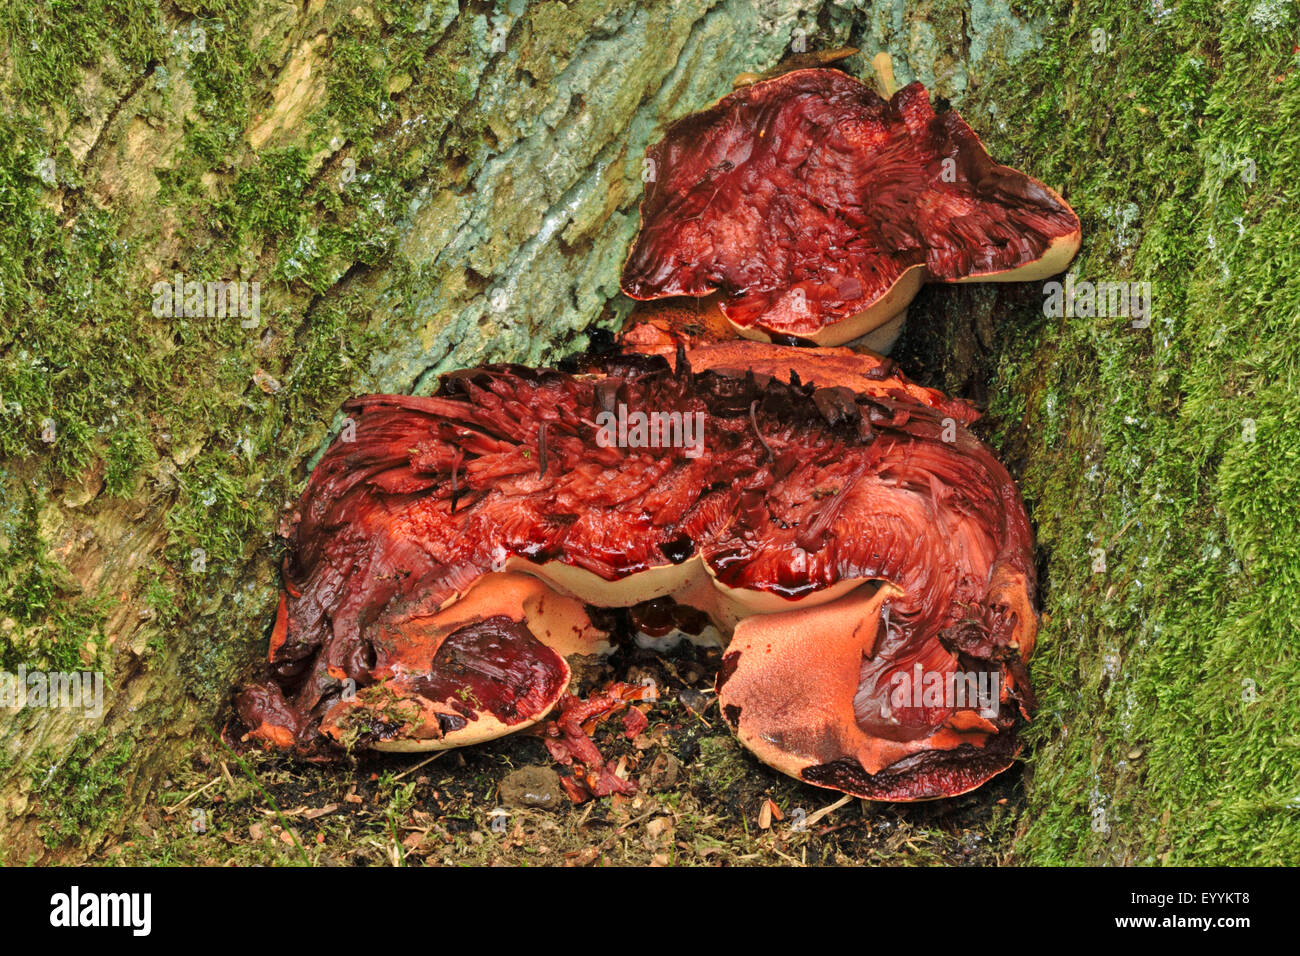 Champignon Fistulina hepatica (beefsteak), à la base d'un tronc d'arbre, Allemagne Banque D'Images